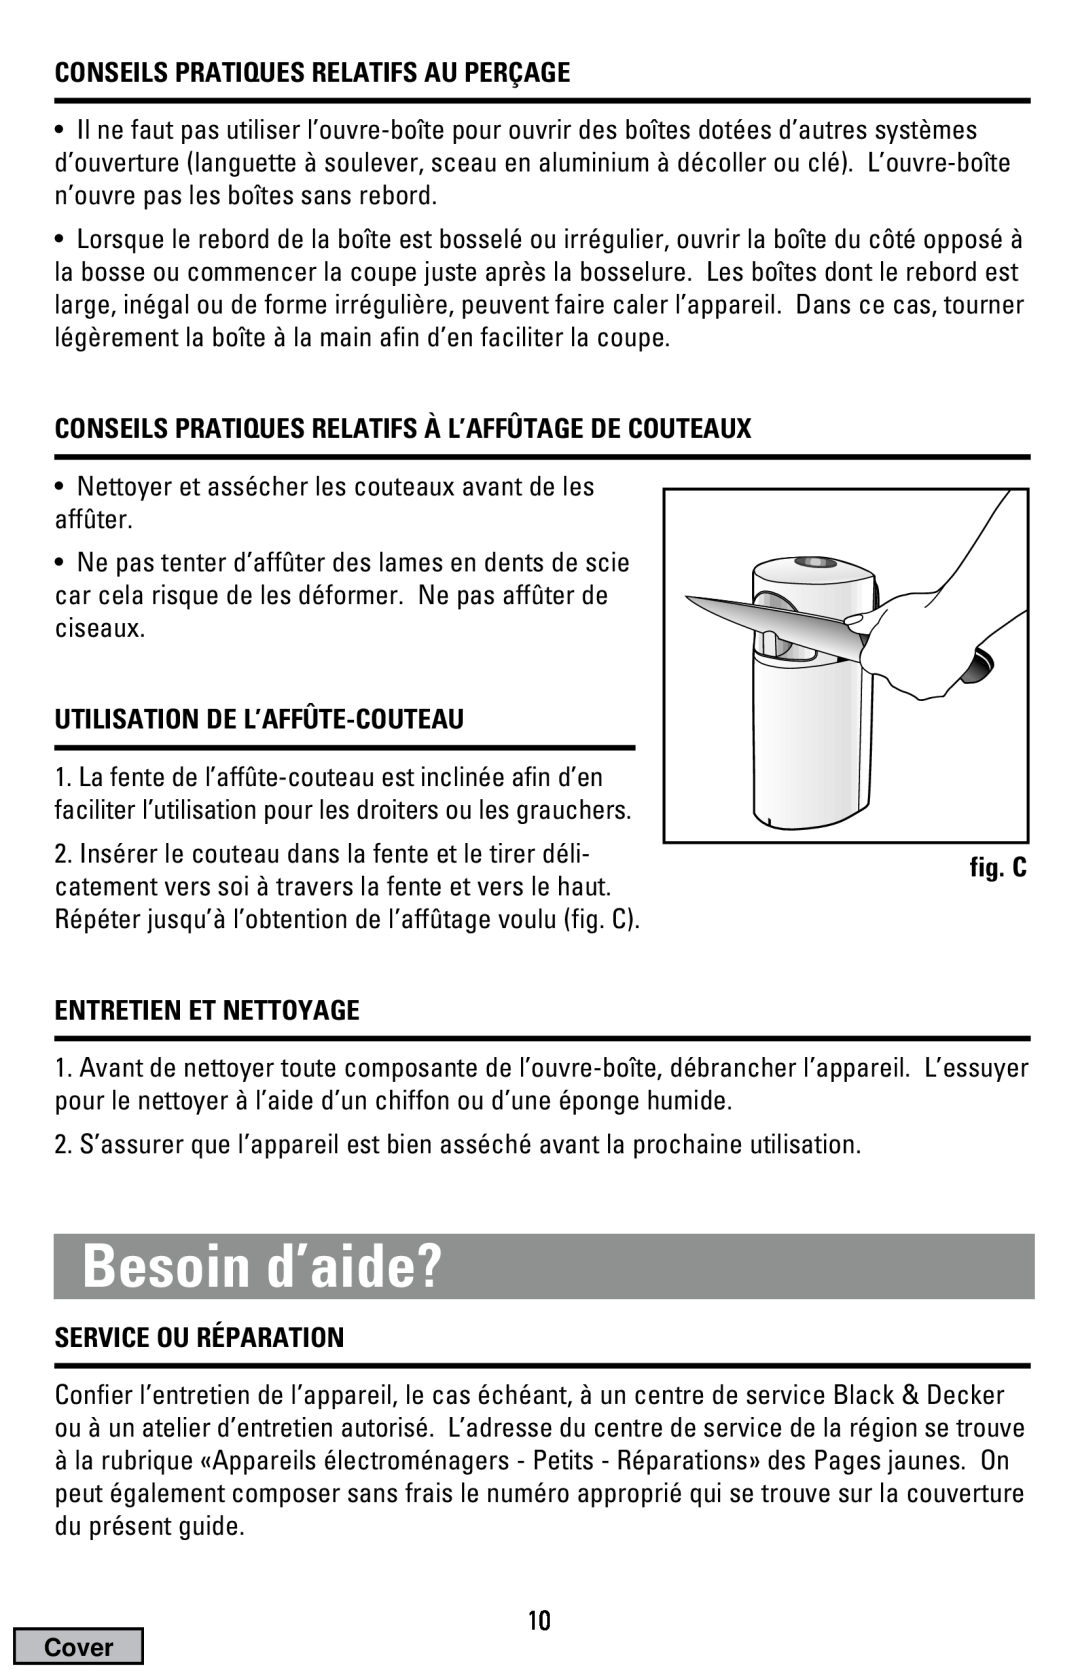 Black & Decker EC500B manual Besoin d’aide?, Conseils Pratiques Relatifs Au Perçage, Utilisation De L’Affûte-Couteau 